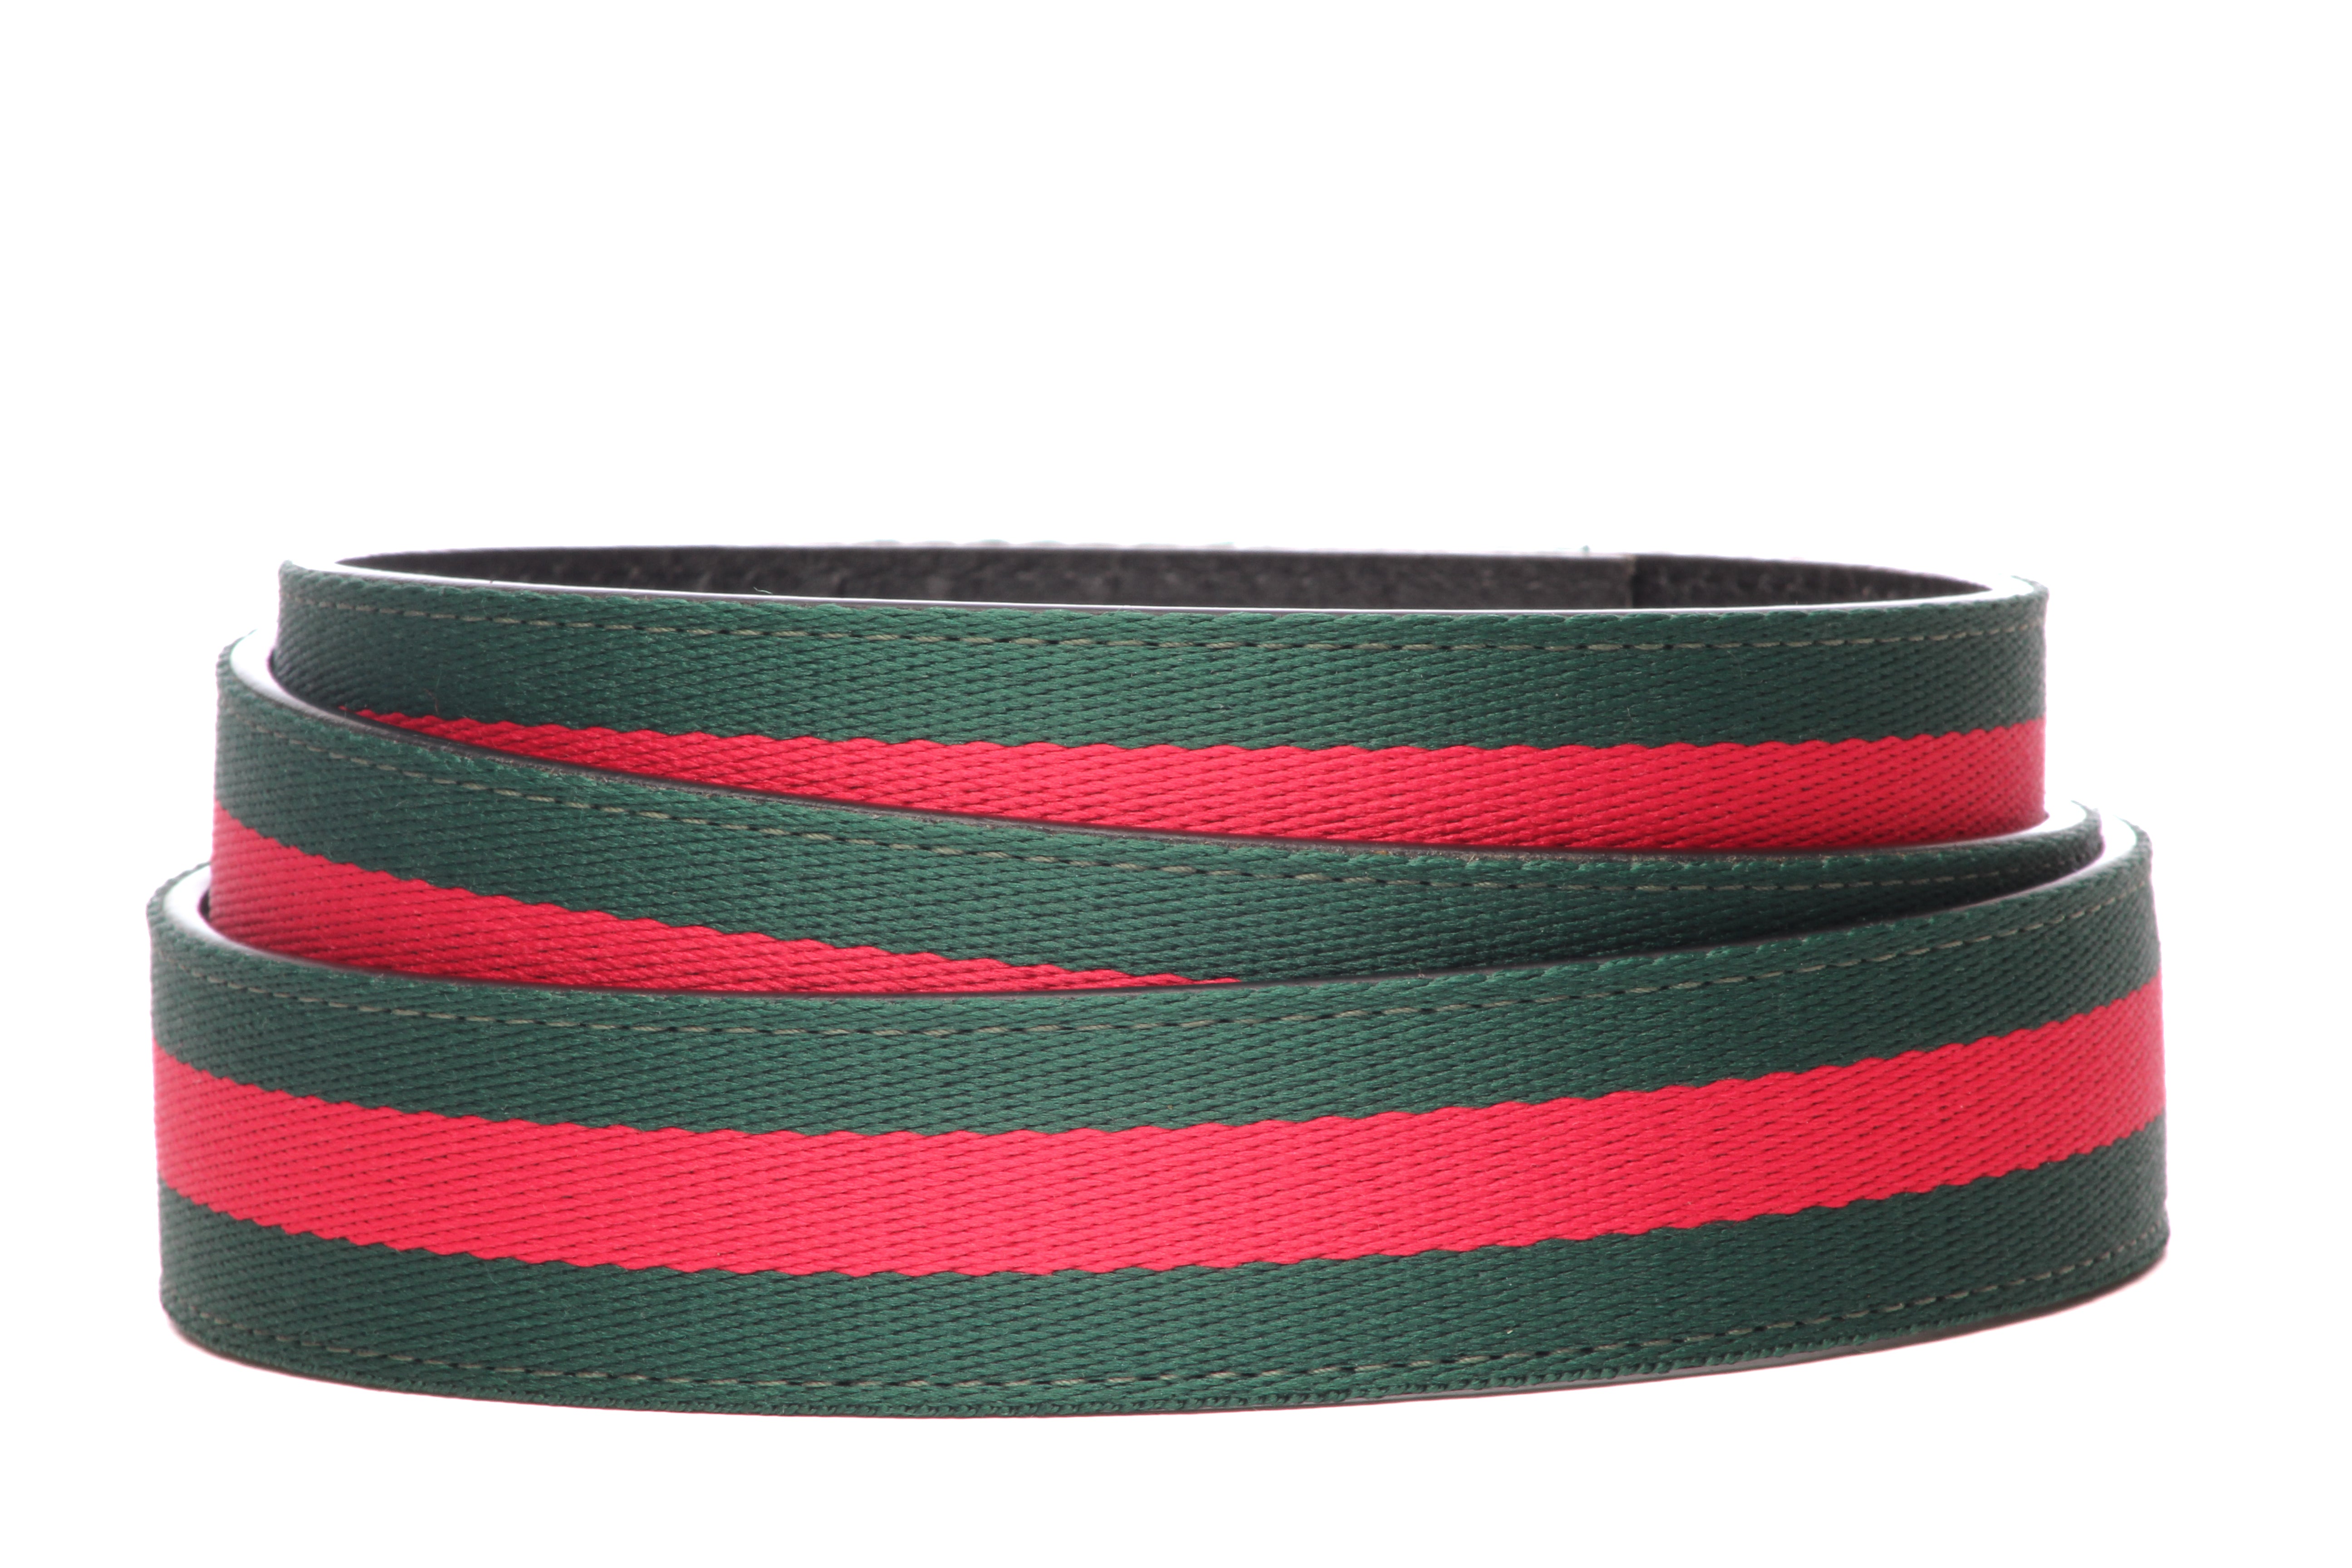 Cloth Belt Strap - Men's Ratchet Belt - Green-Red Stripe, 1.25